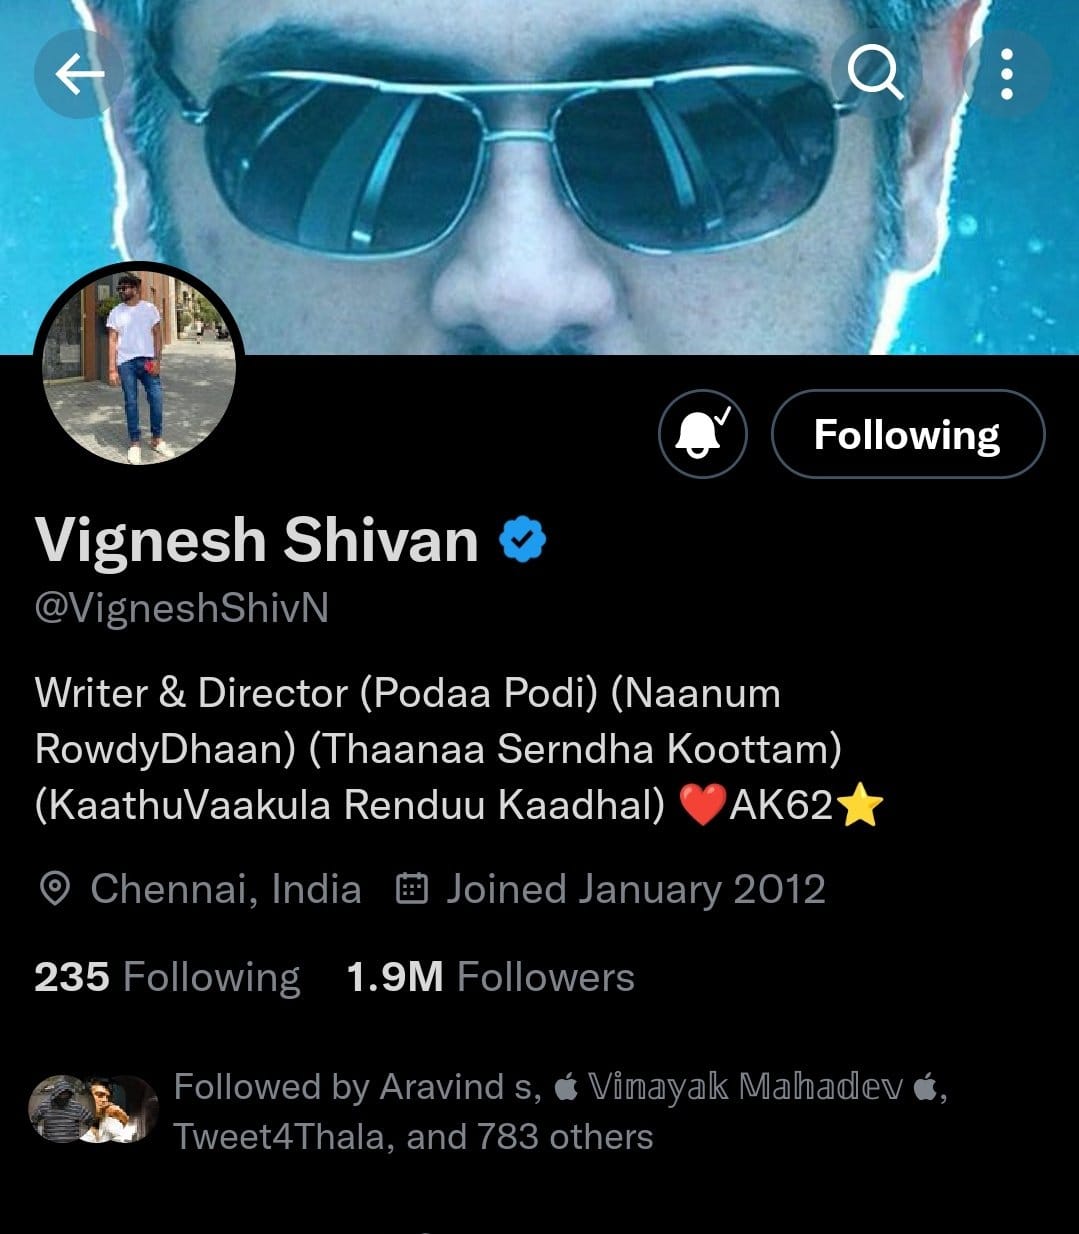 AK62 Vignesh Shivan Change His Twitter Handle CP